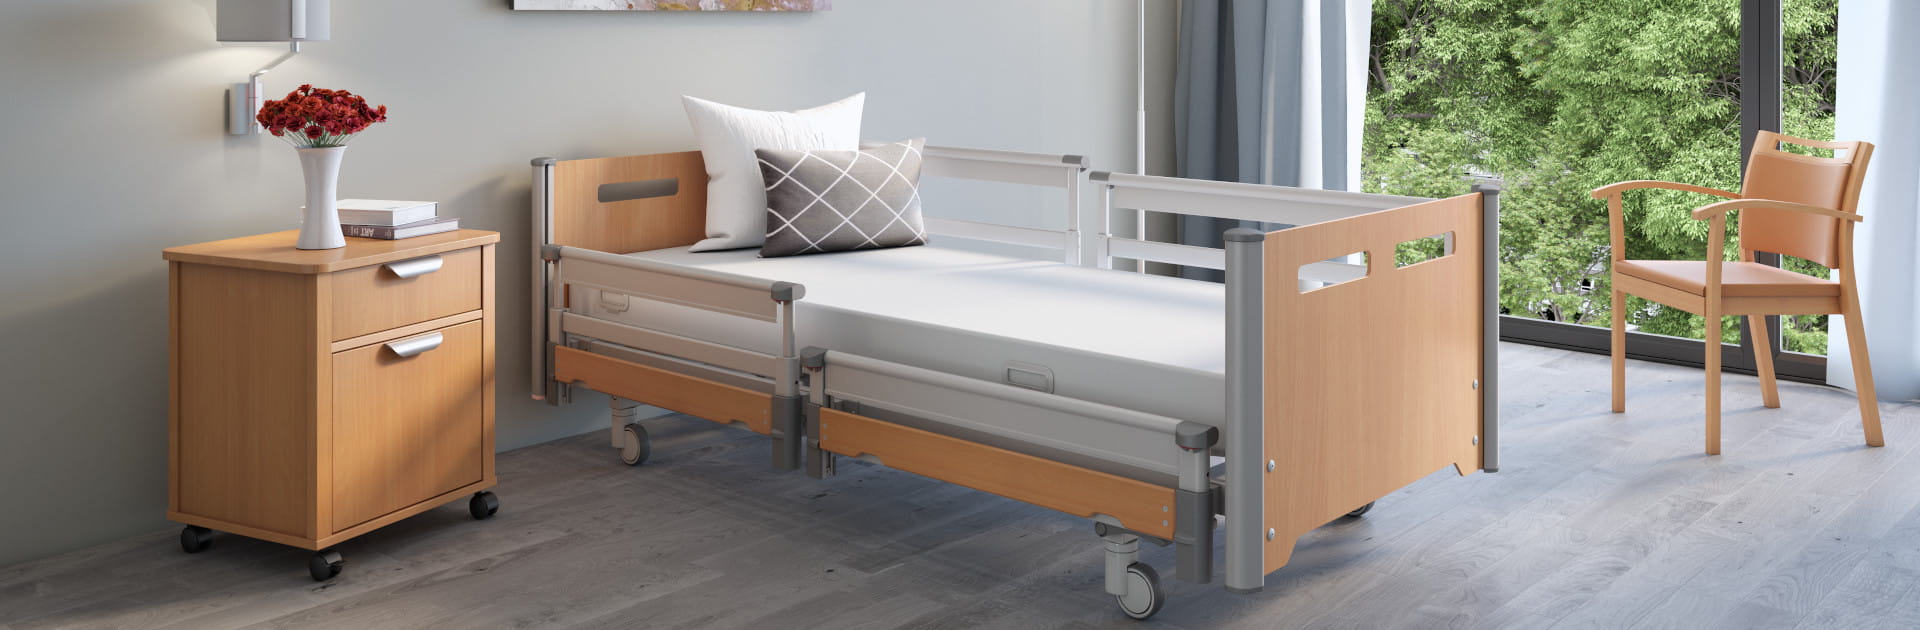 Das waschbare variana Pflegebett kombiniert funktionell flexible Elemente mit Wirtschaftlichkeit und Design.